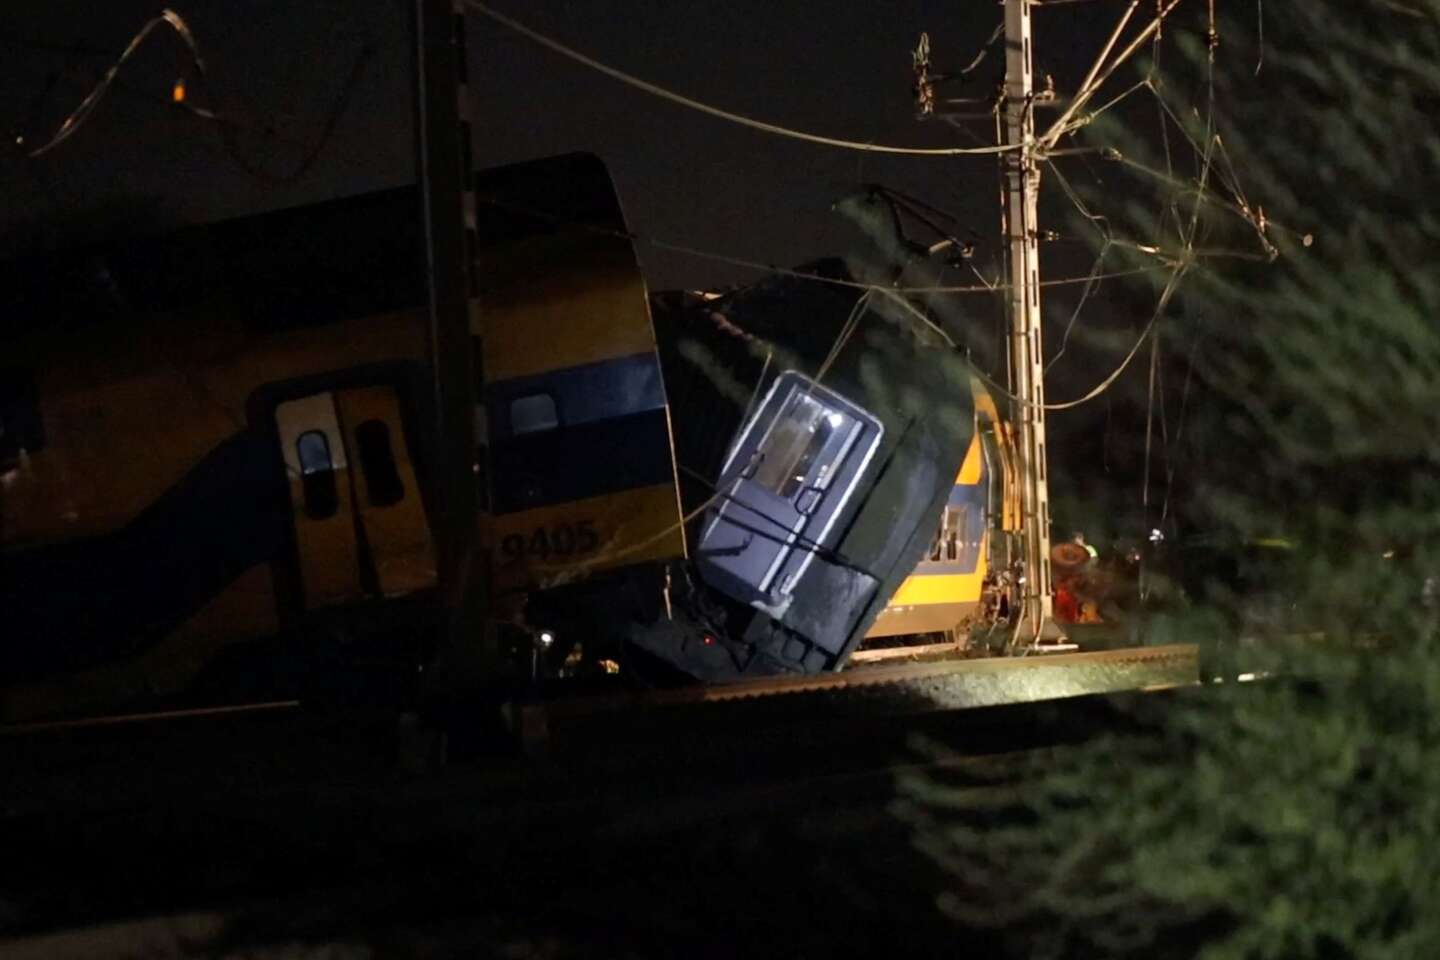 In Nederland ontspoorde een trein tussen Leiden en Den Haag, waarbij één persoon om het leven kwam en tientallen gewond raakten.